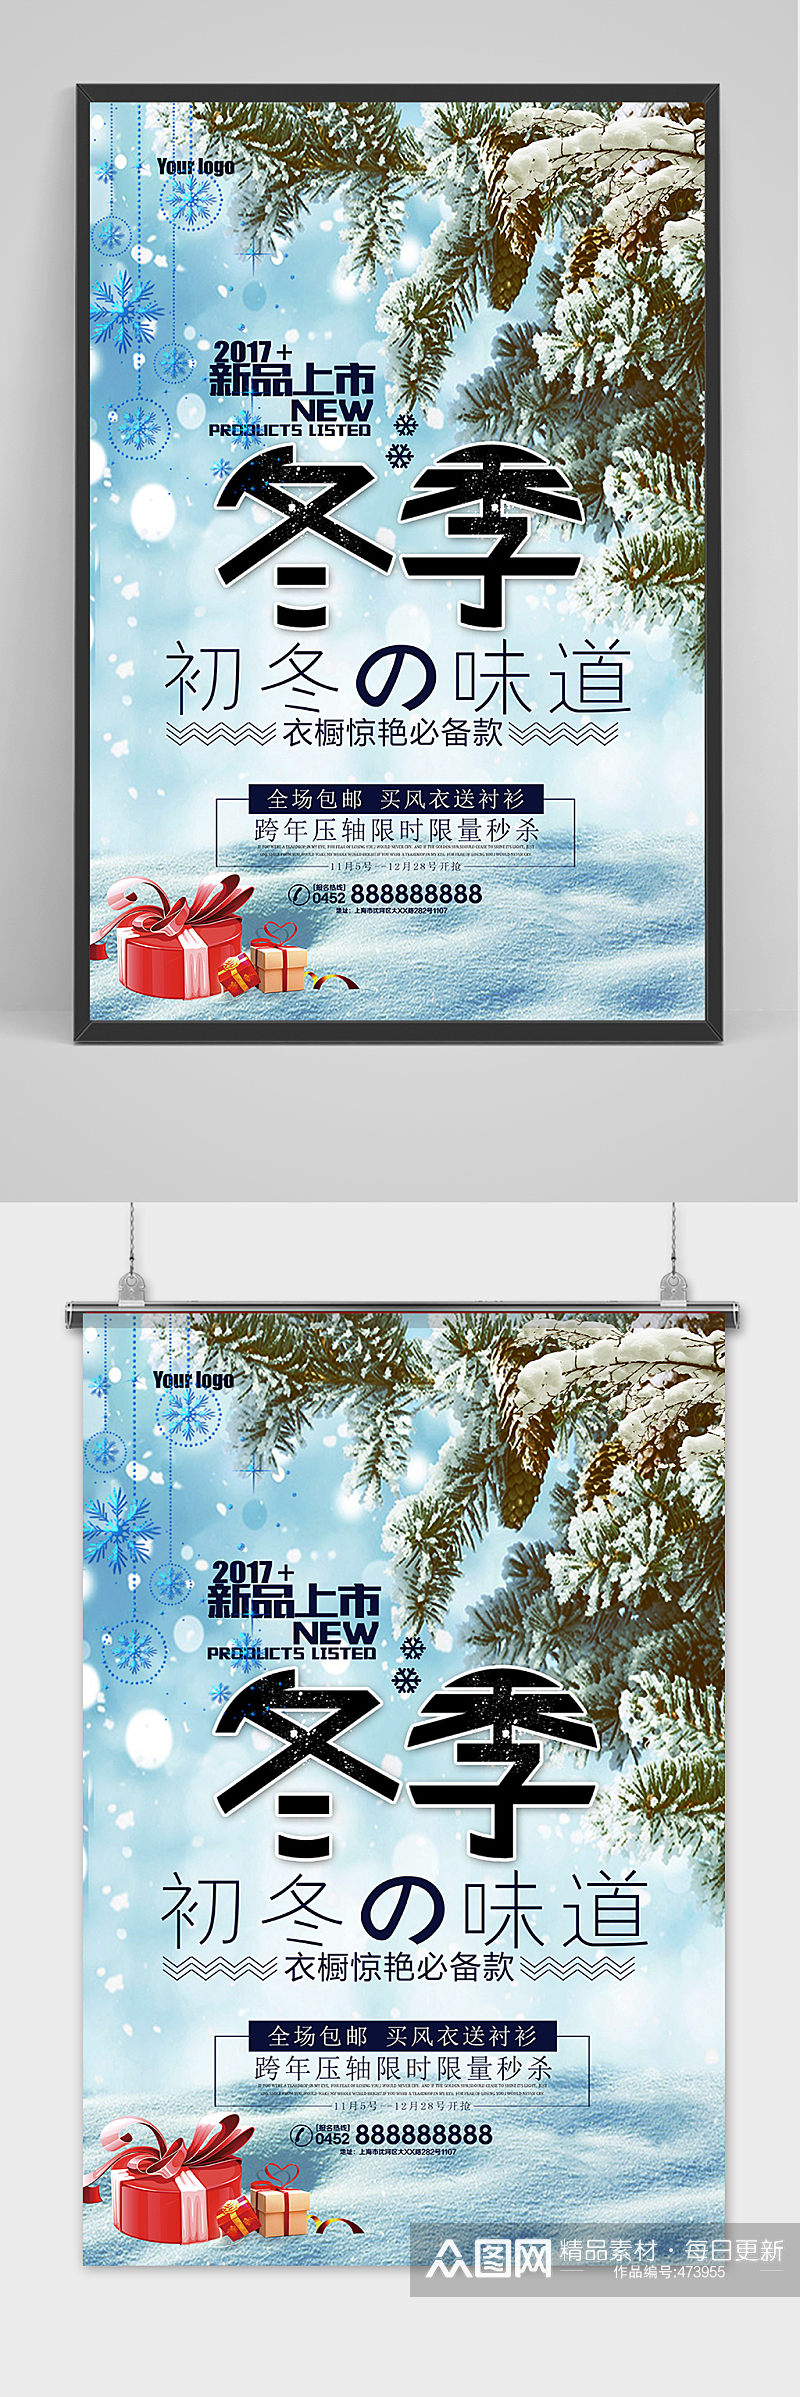 冬季新品上市促销海报设计素材